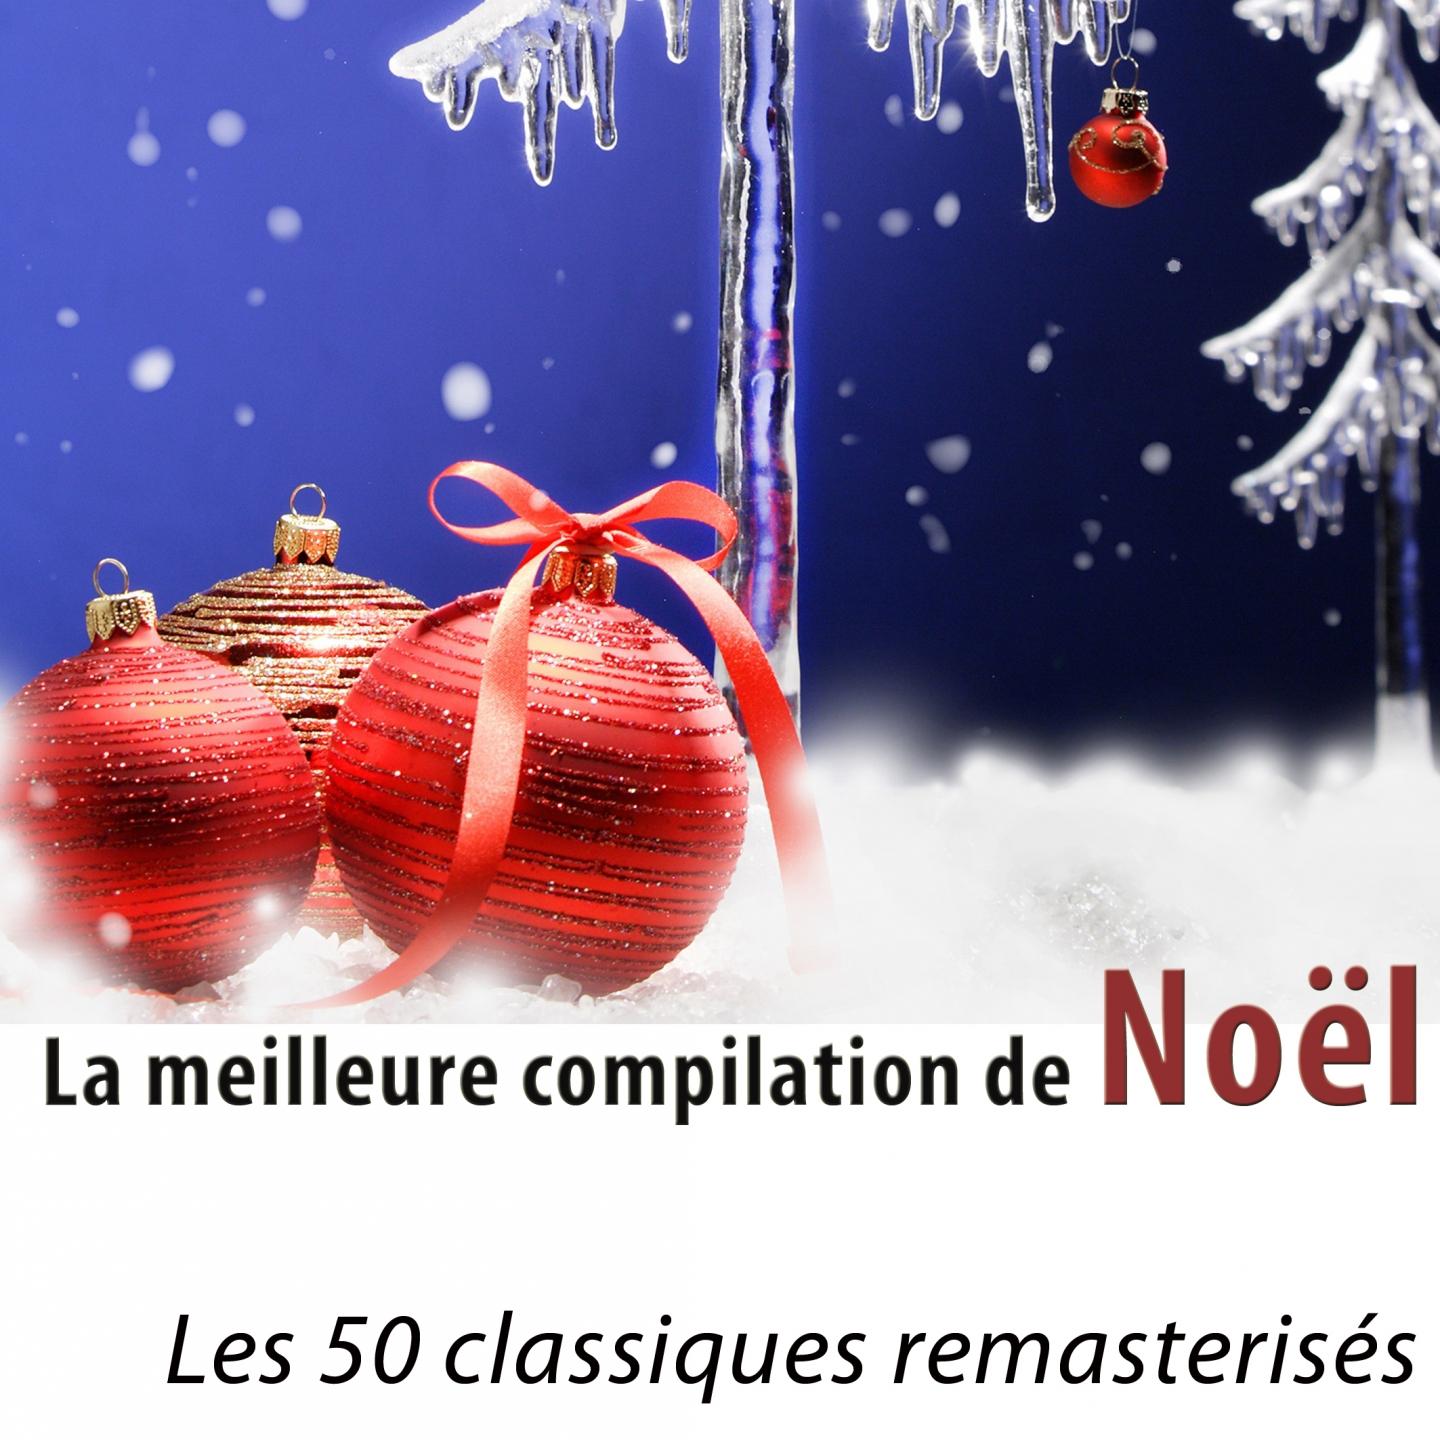 La meilleure compilation de No l Les 50 classiques remasterise s